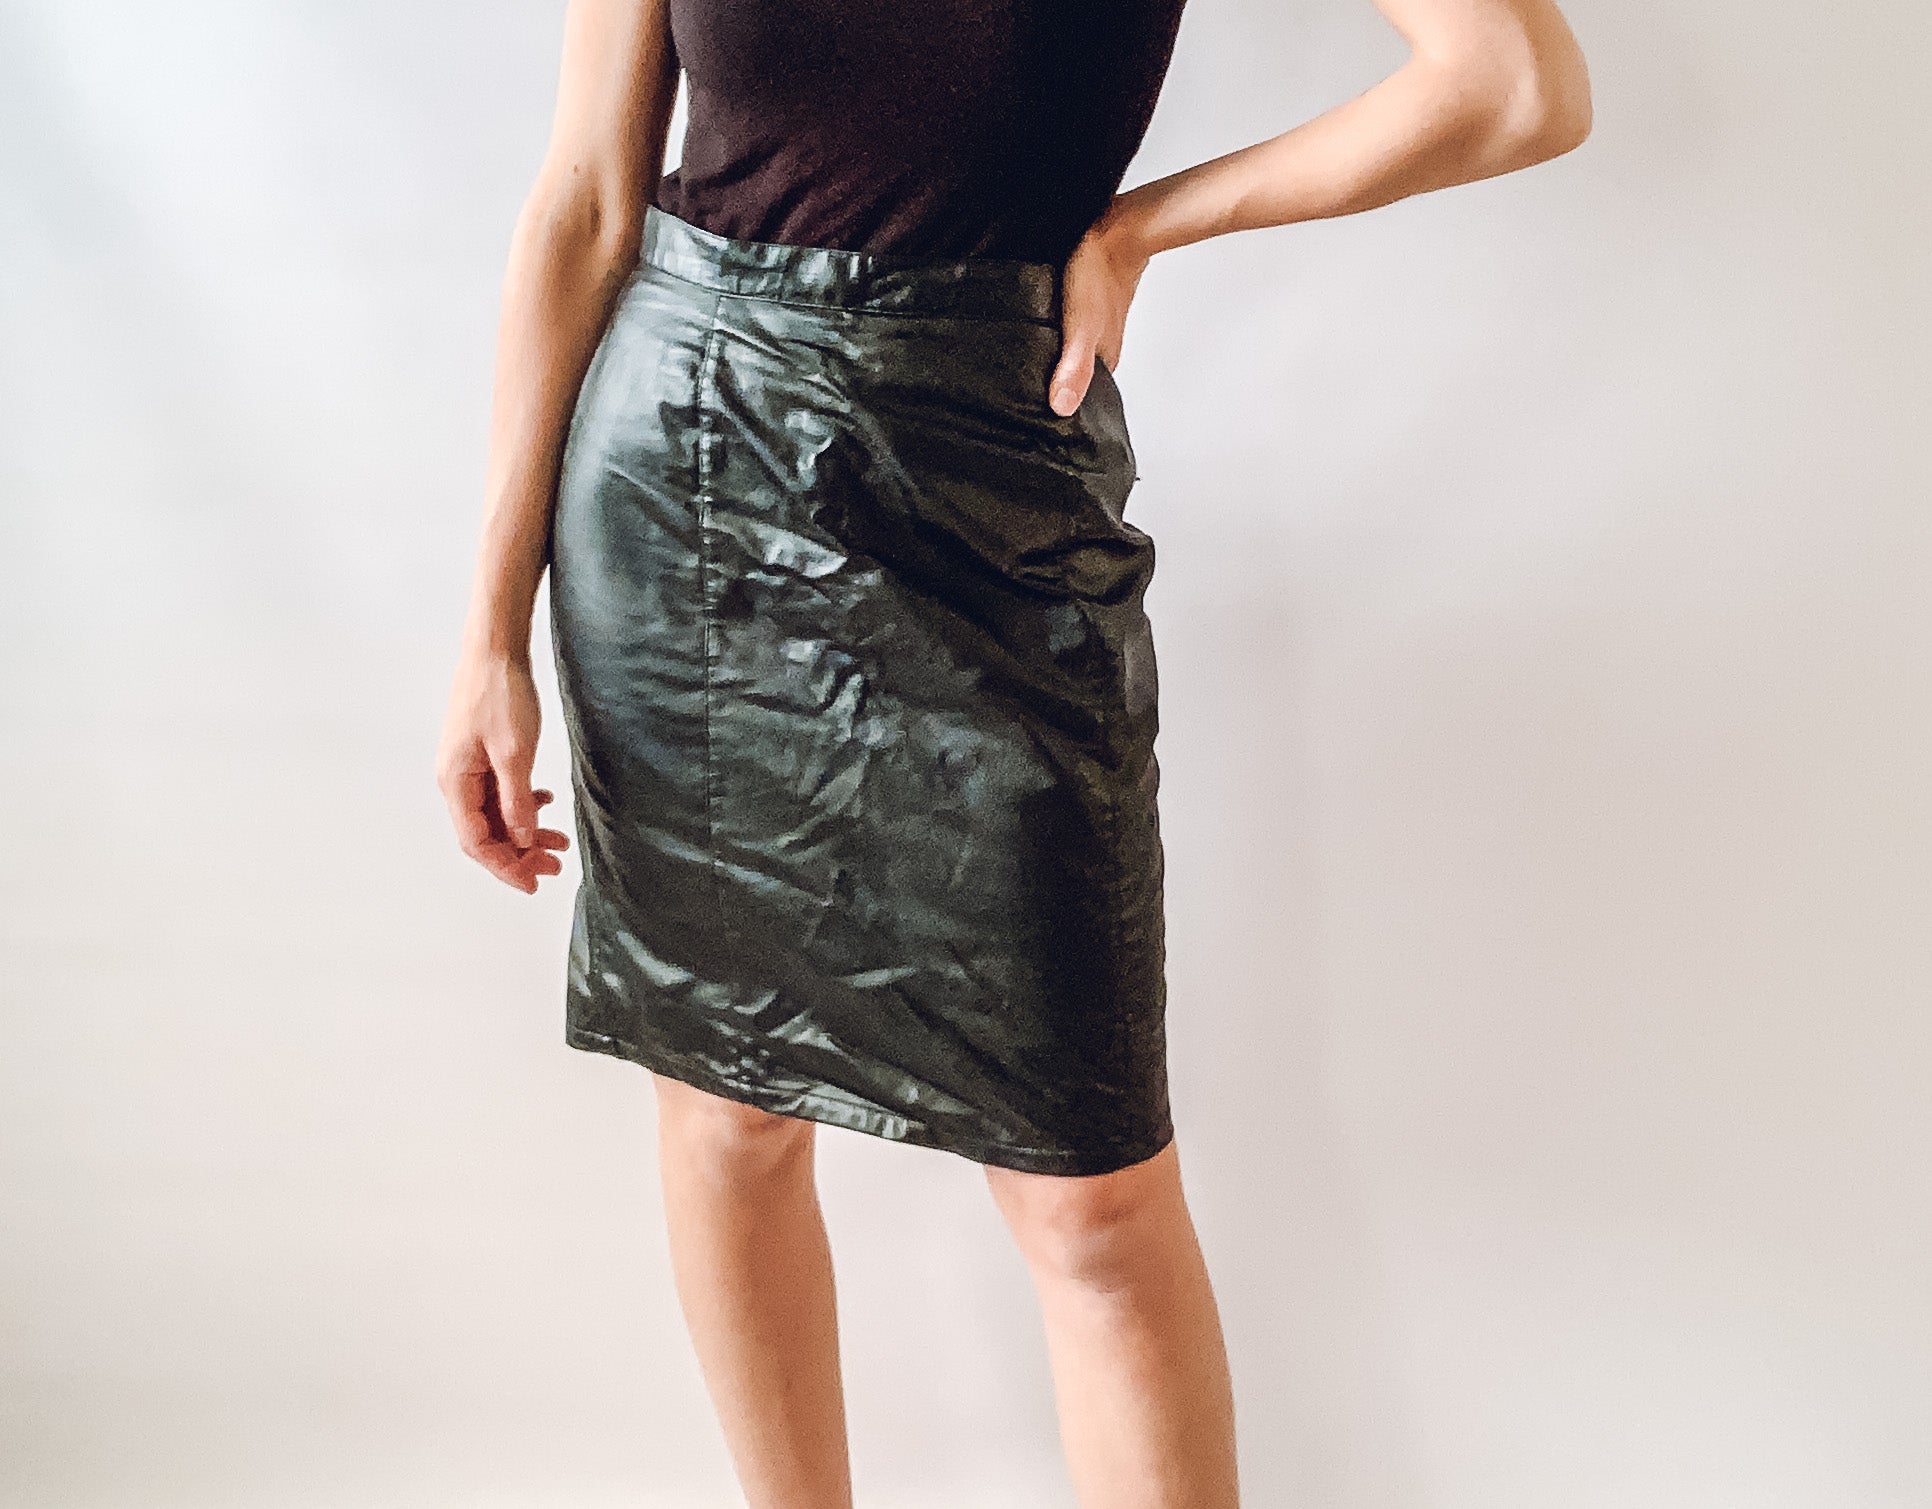 Leatherlike Skirt